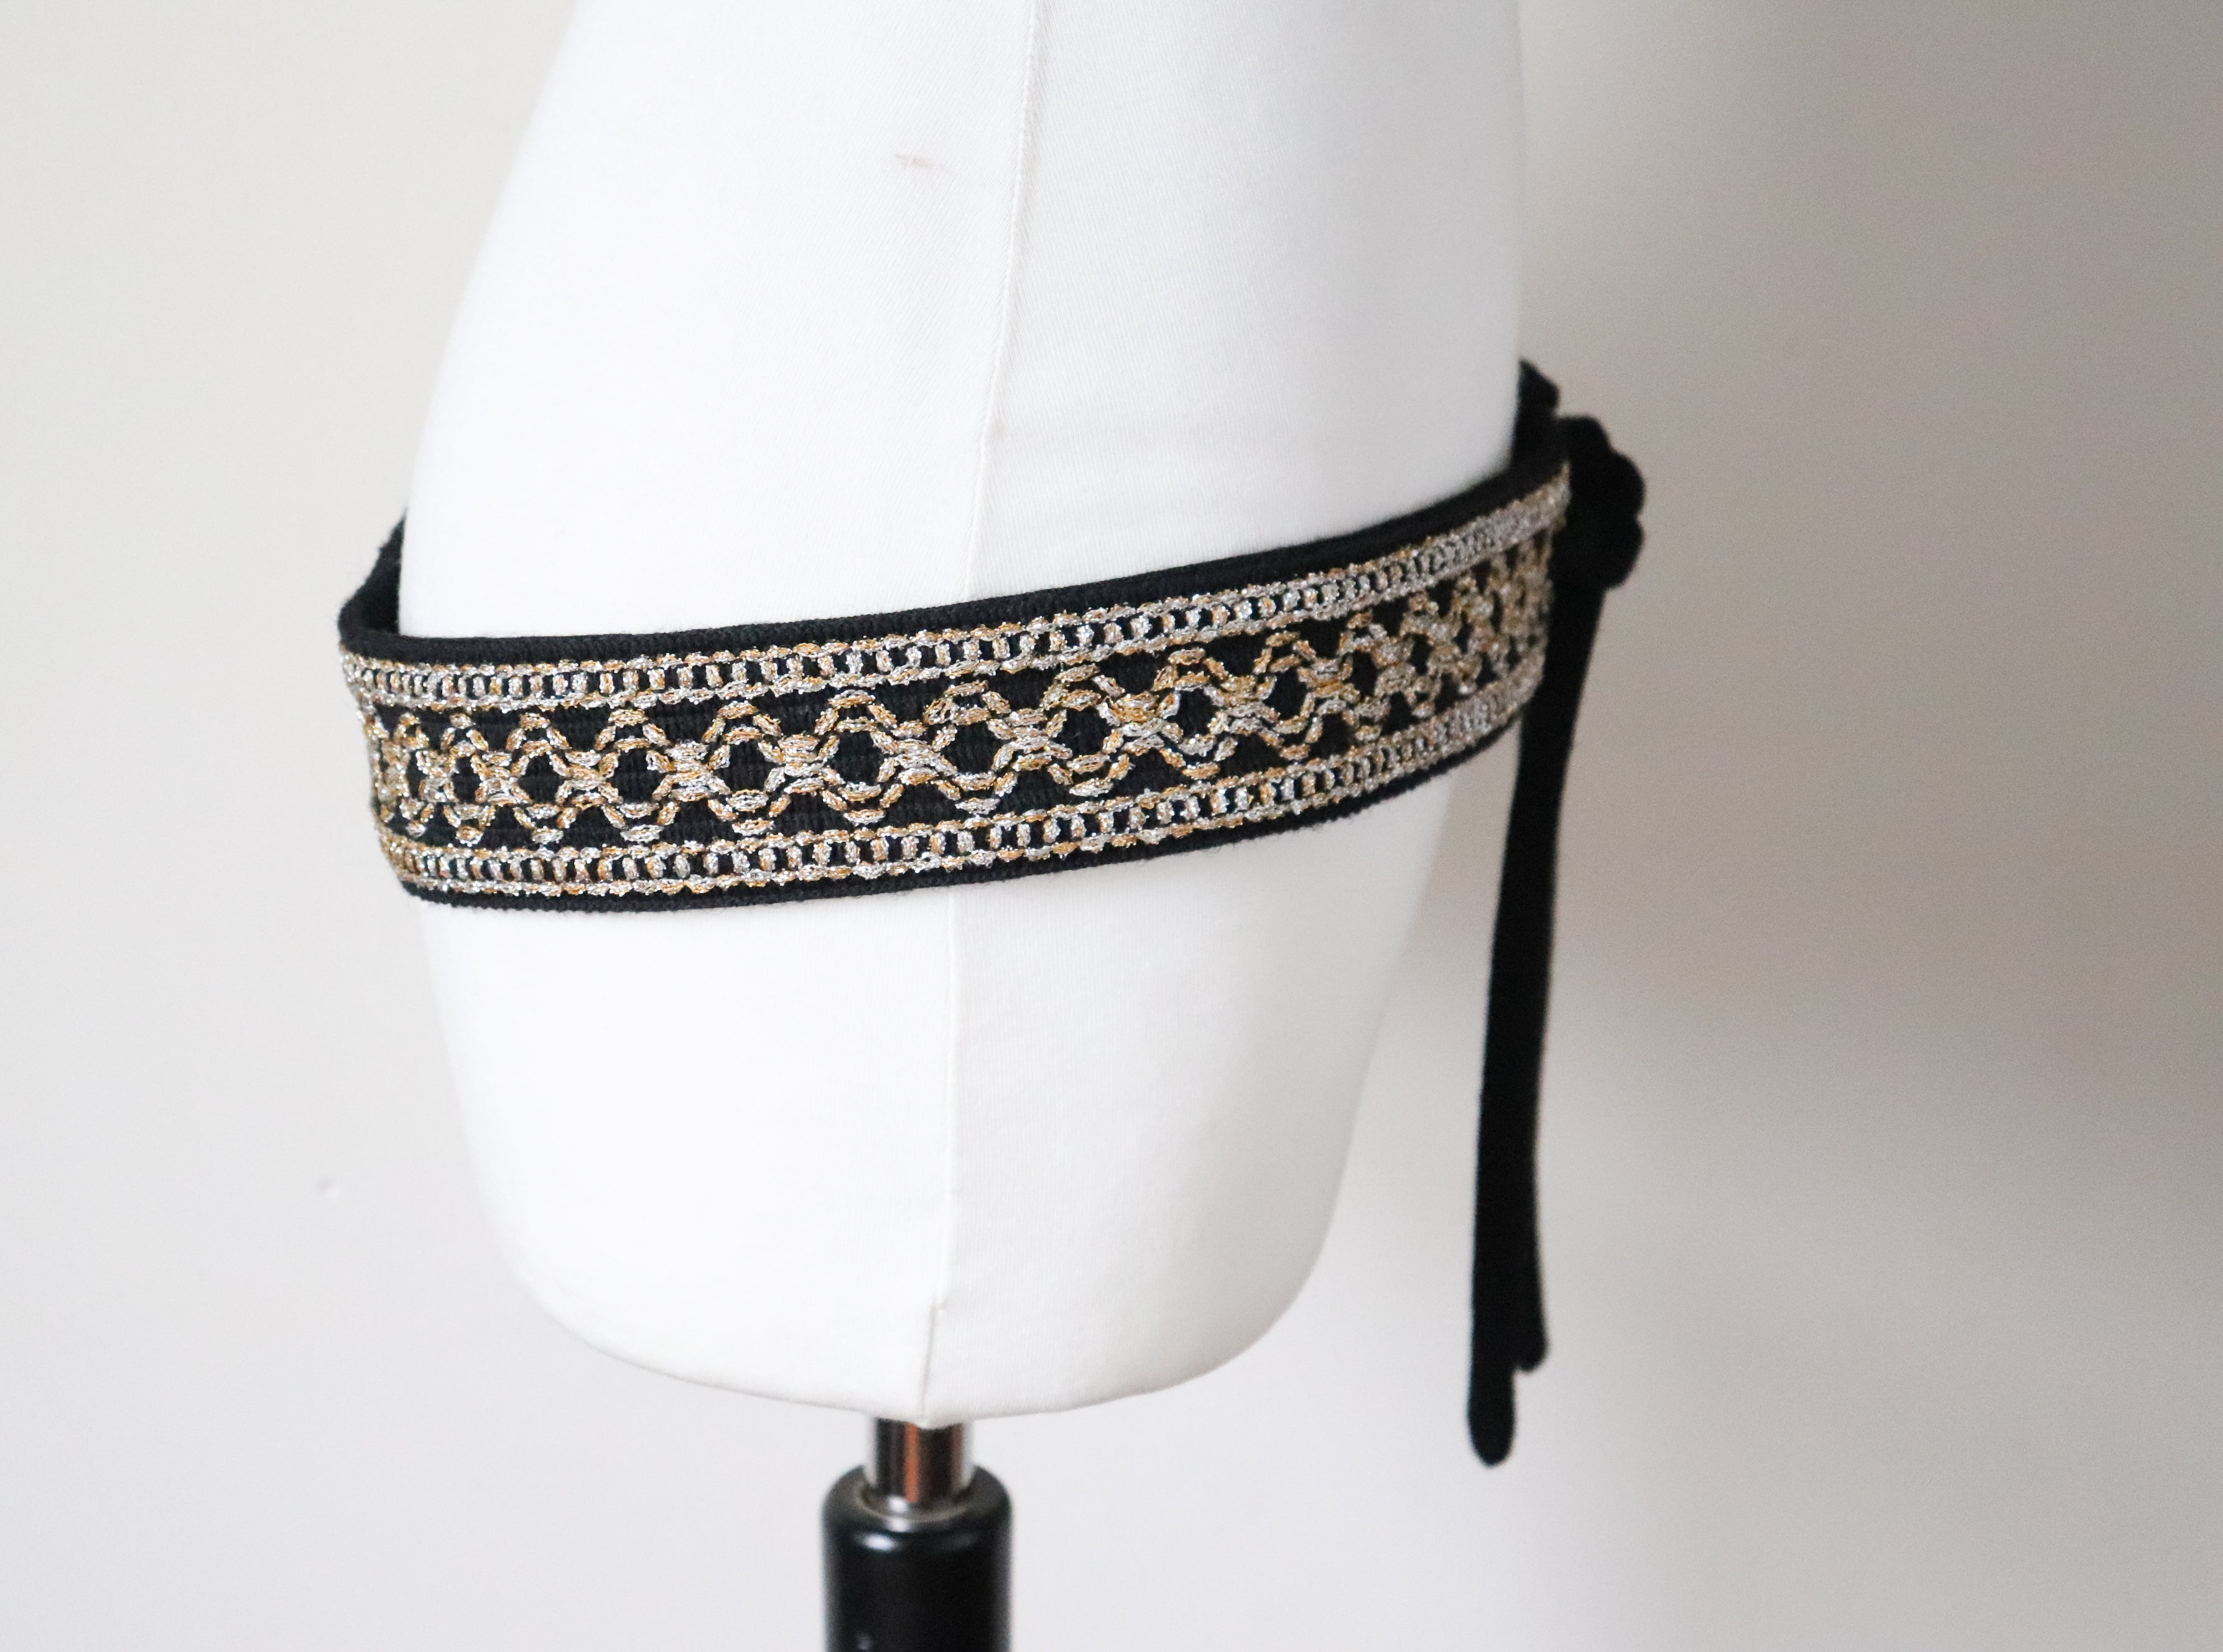 Embroidered Sash Tie 1970s Vintage Belt - Black / Gold - Obi - M / L